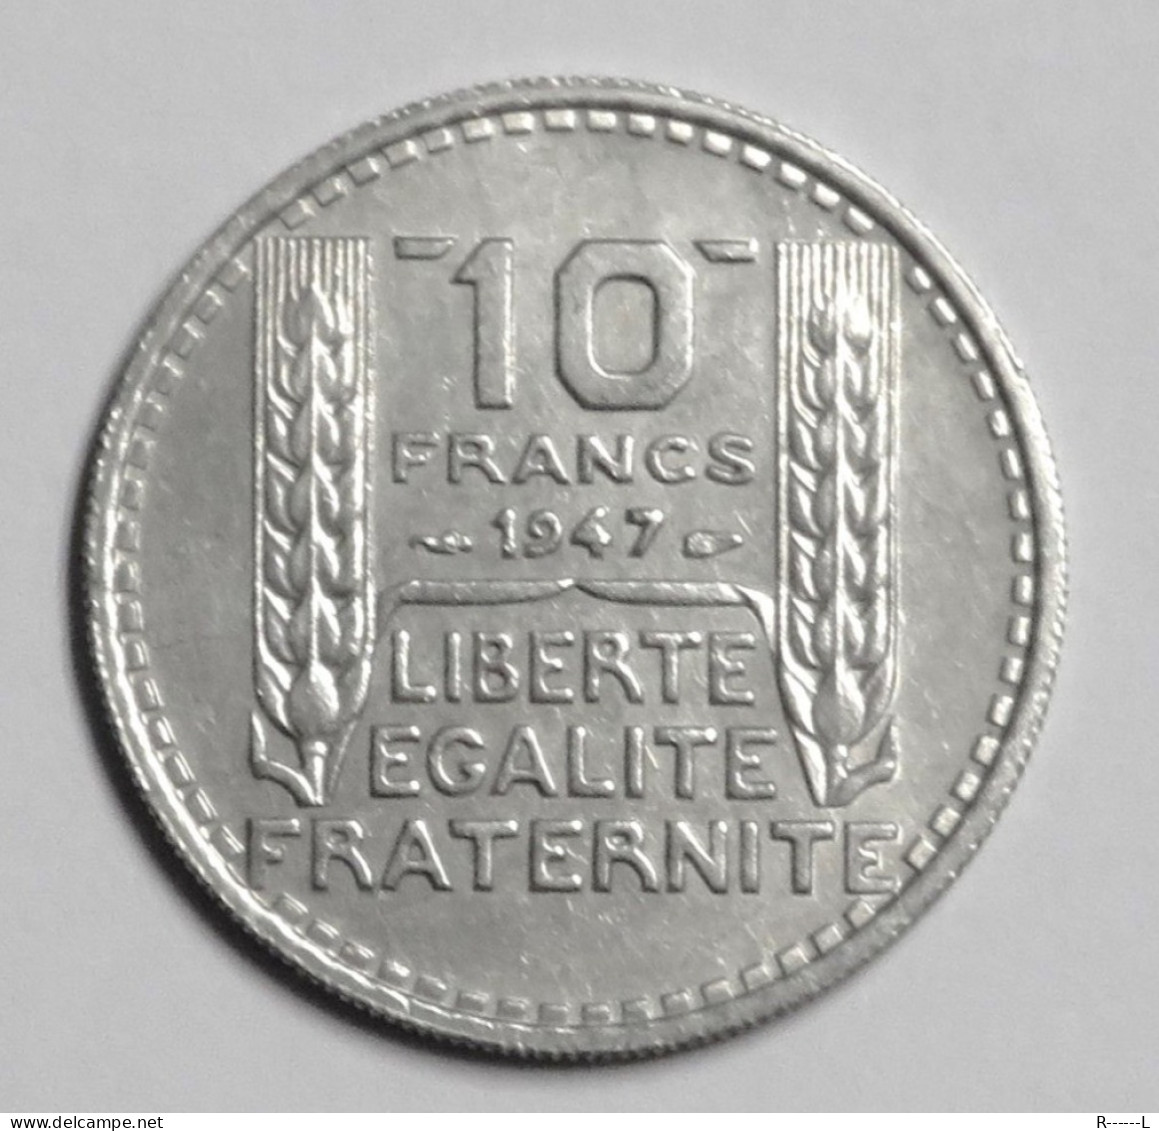 Monnaie 10 Francs 1947 Turin Grosse Tête , Rameaux Courts ( Gouvernement Provisoire ) - 10 Francs